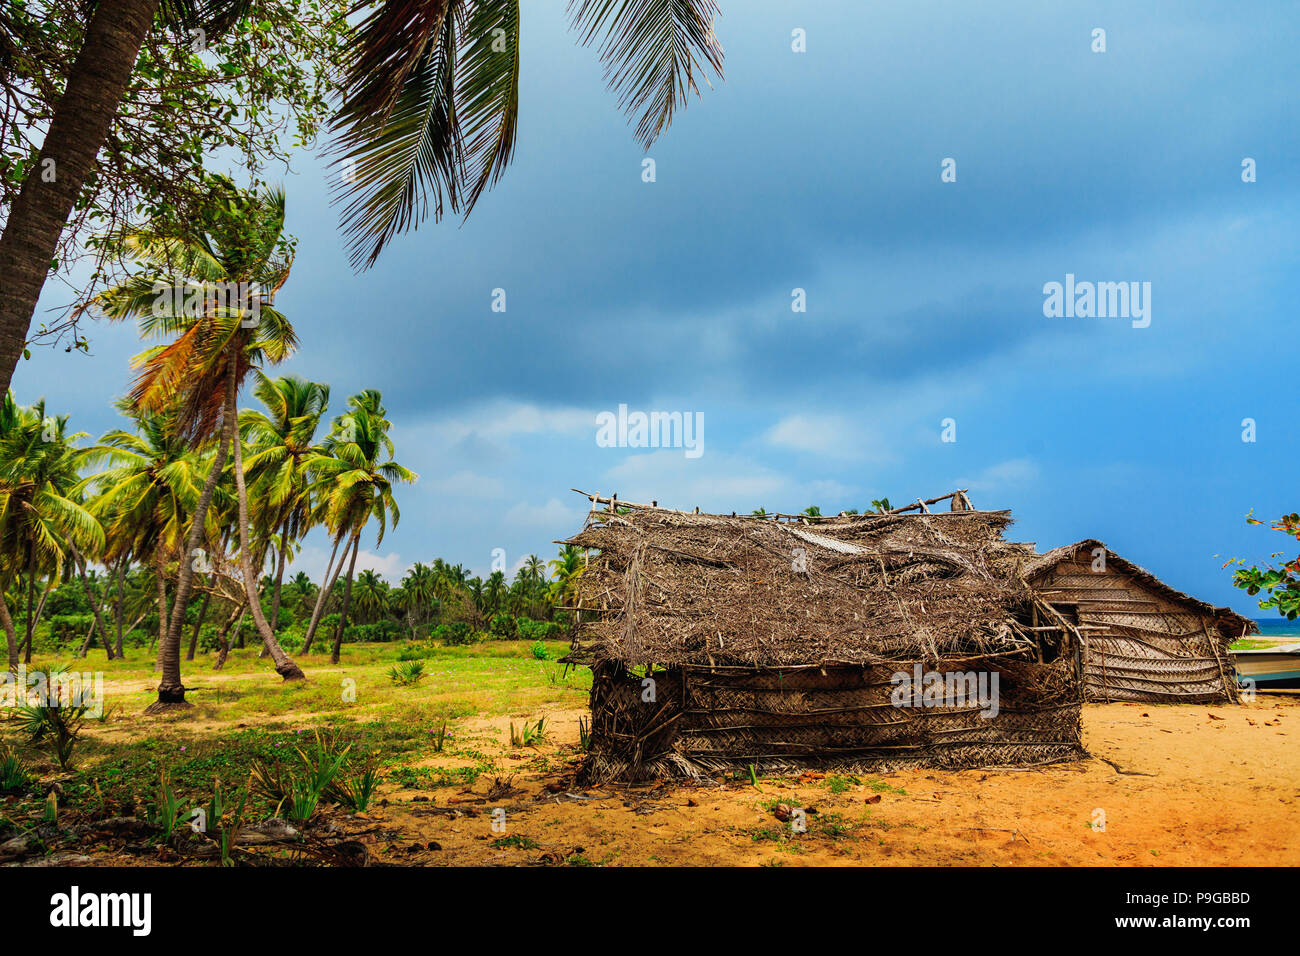 Casa de paja de hojas de coco o pesca cabaña en la playa tropical o la vendimia tradicional casa ecológica en una aldea rural Foto de stock